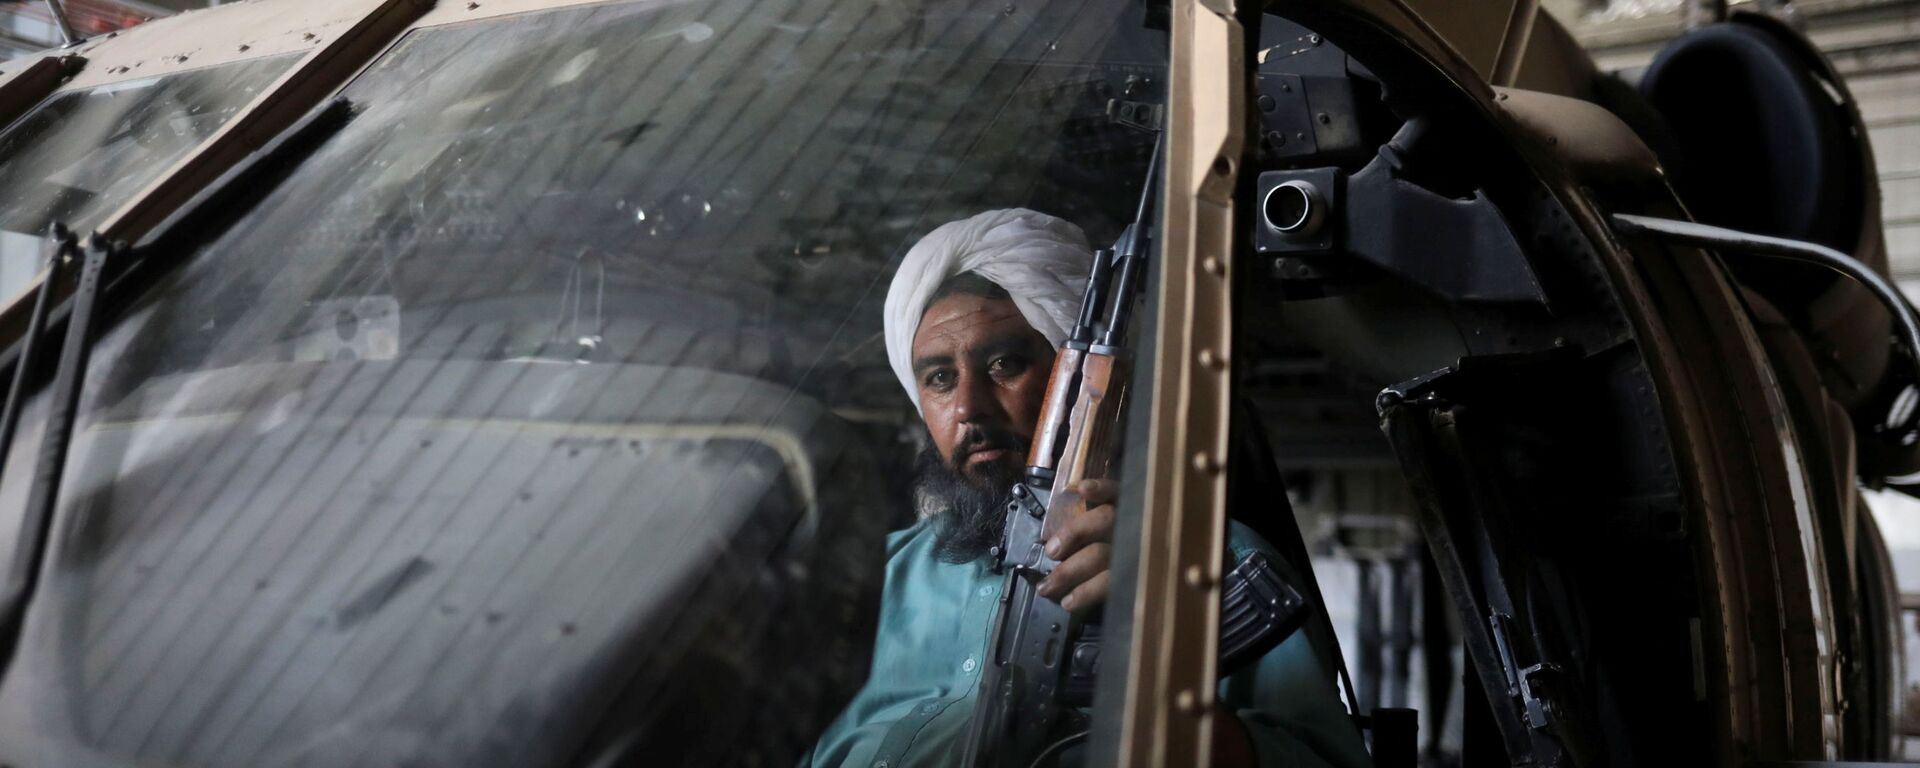 Боевики Талибана* на бывшей американской авиабазе Баграм в Парване, Афганистан - Sputnik Тоҷикистон, 1920, 15.10.2021